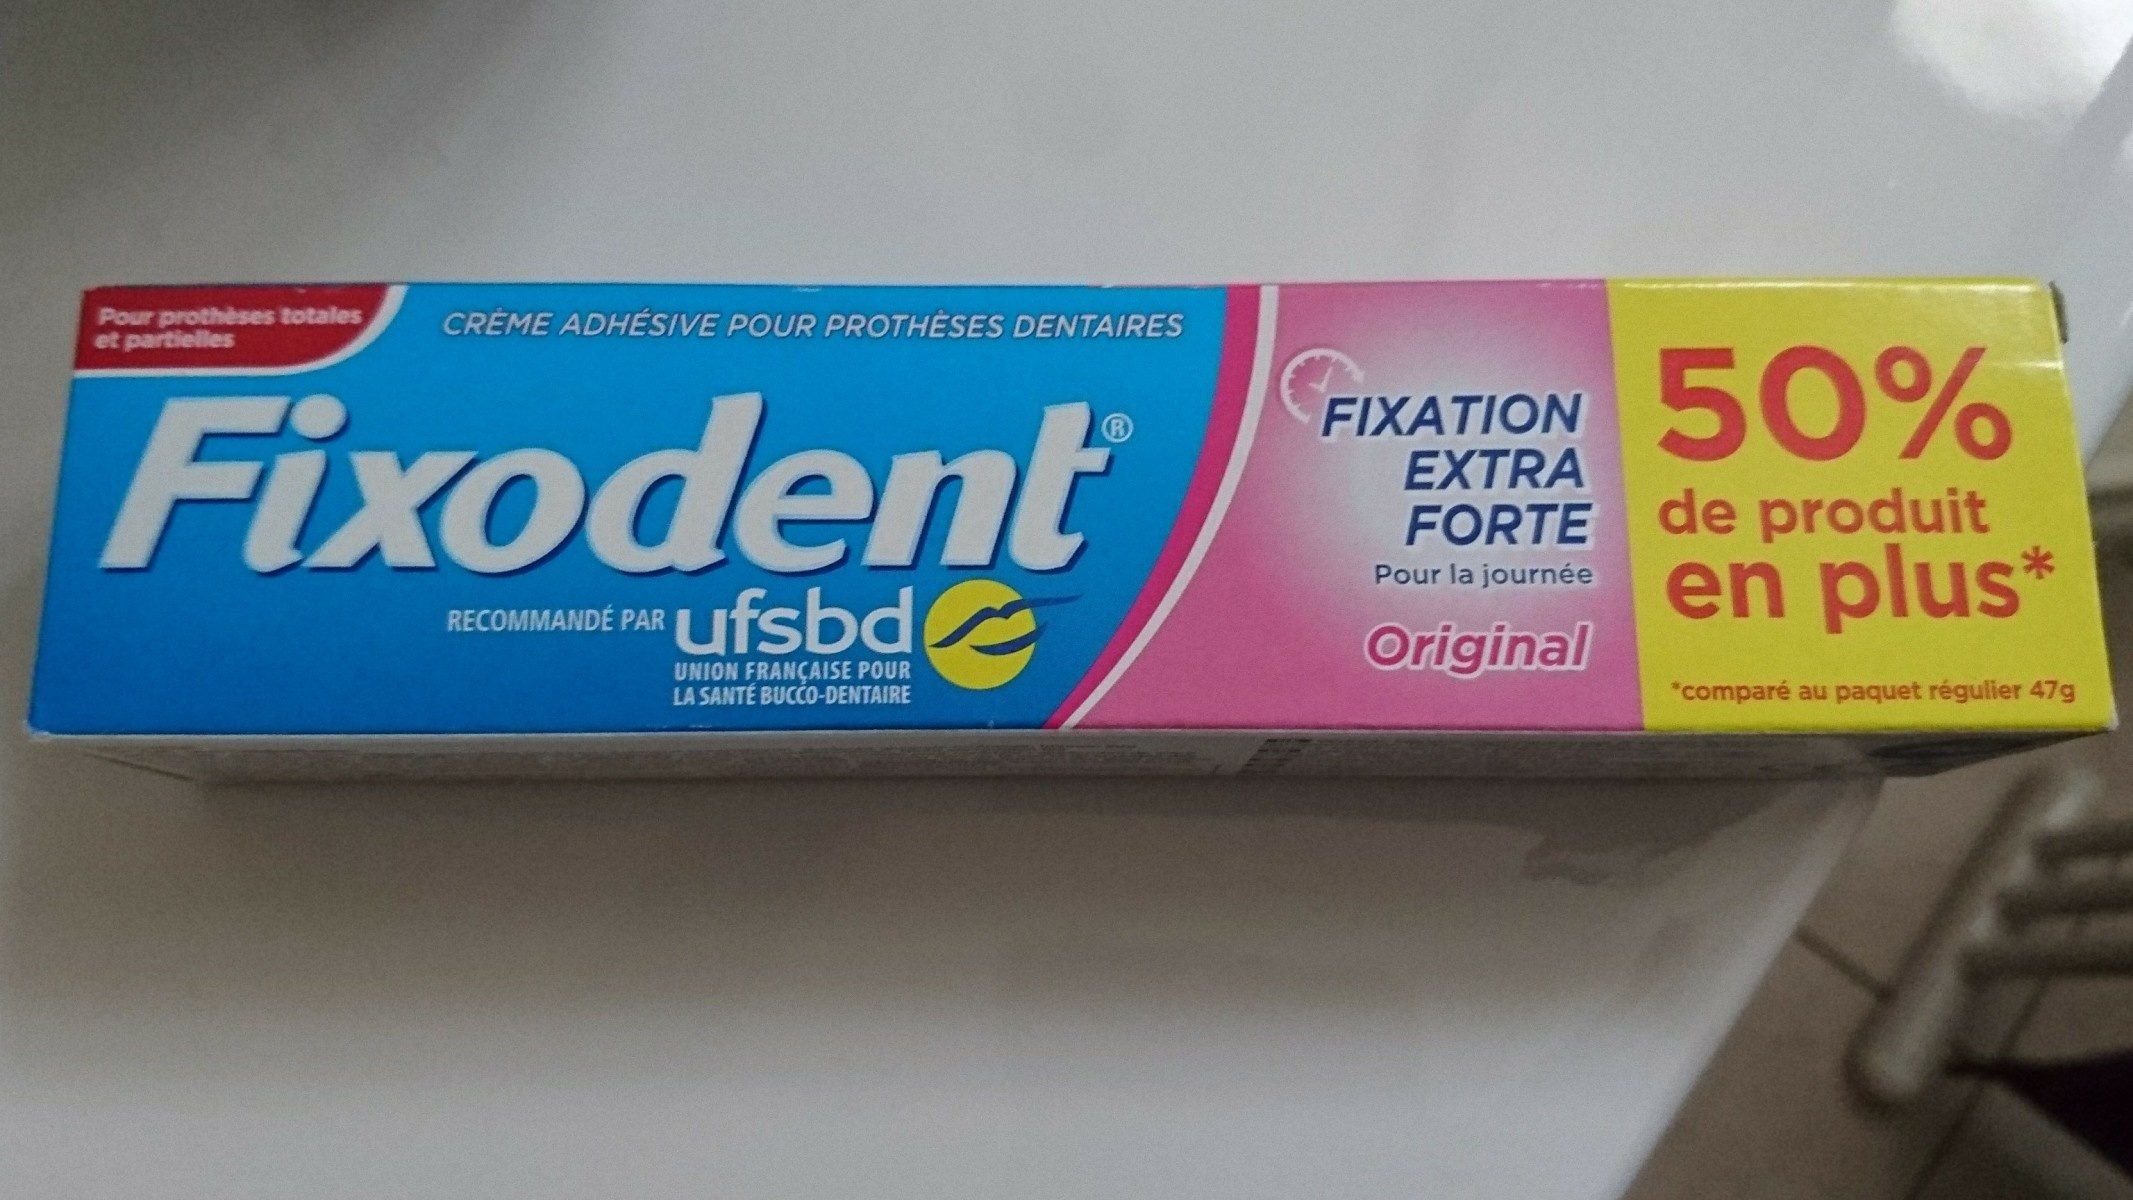 Crème adhésive prothèses dentaires fixation extra forte - Ингредиенты - fr